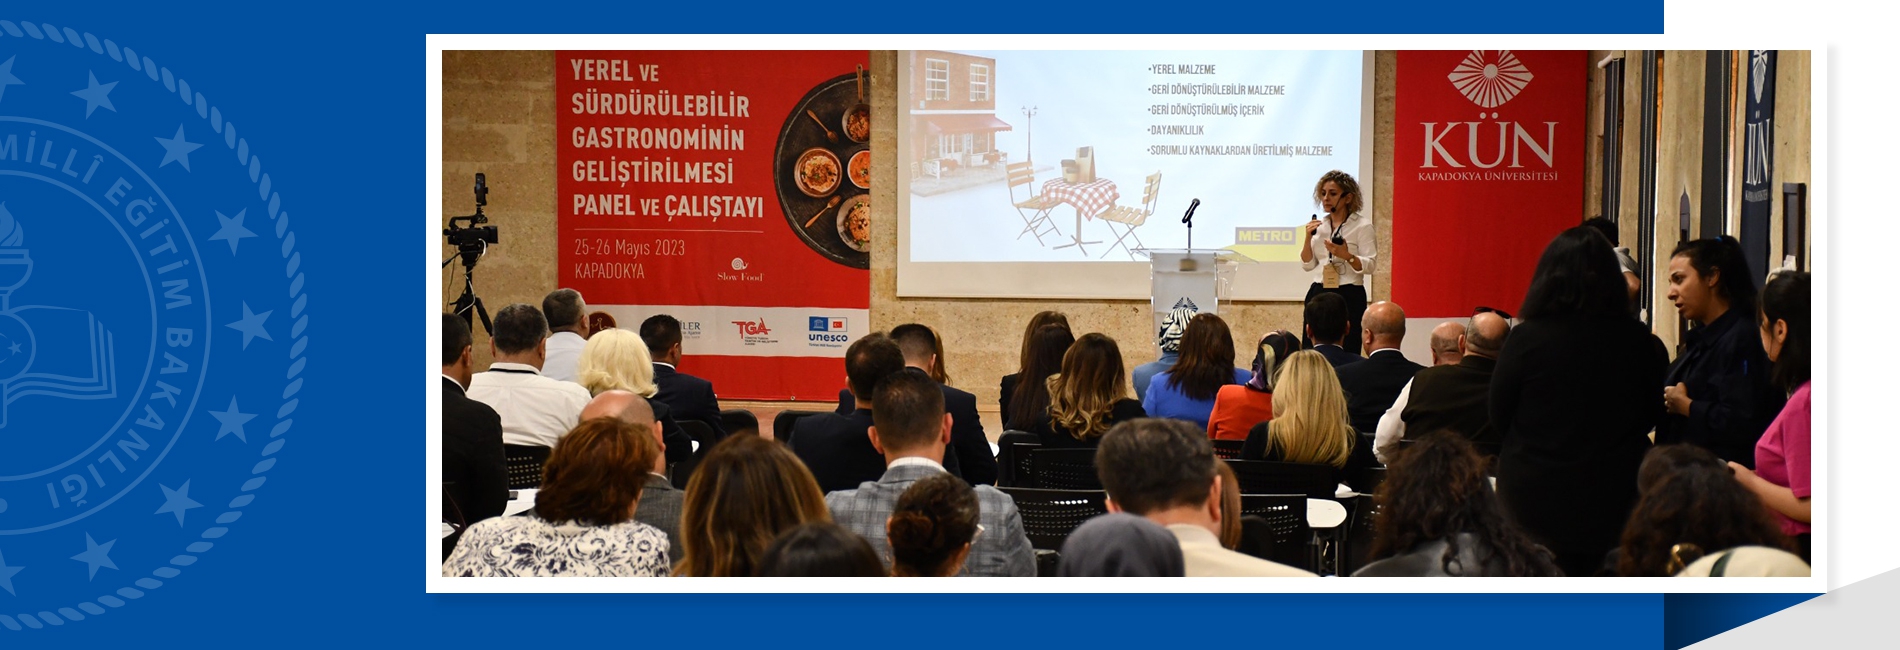 Kapadokya Gastronomi MTAL, Gastronominin Geliştirilmesi Panel ve Çalıştayı'na ev sahipliği yaptı.